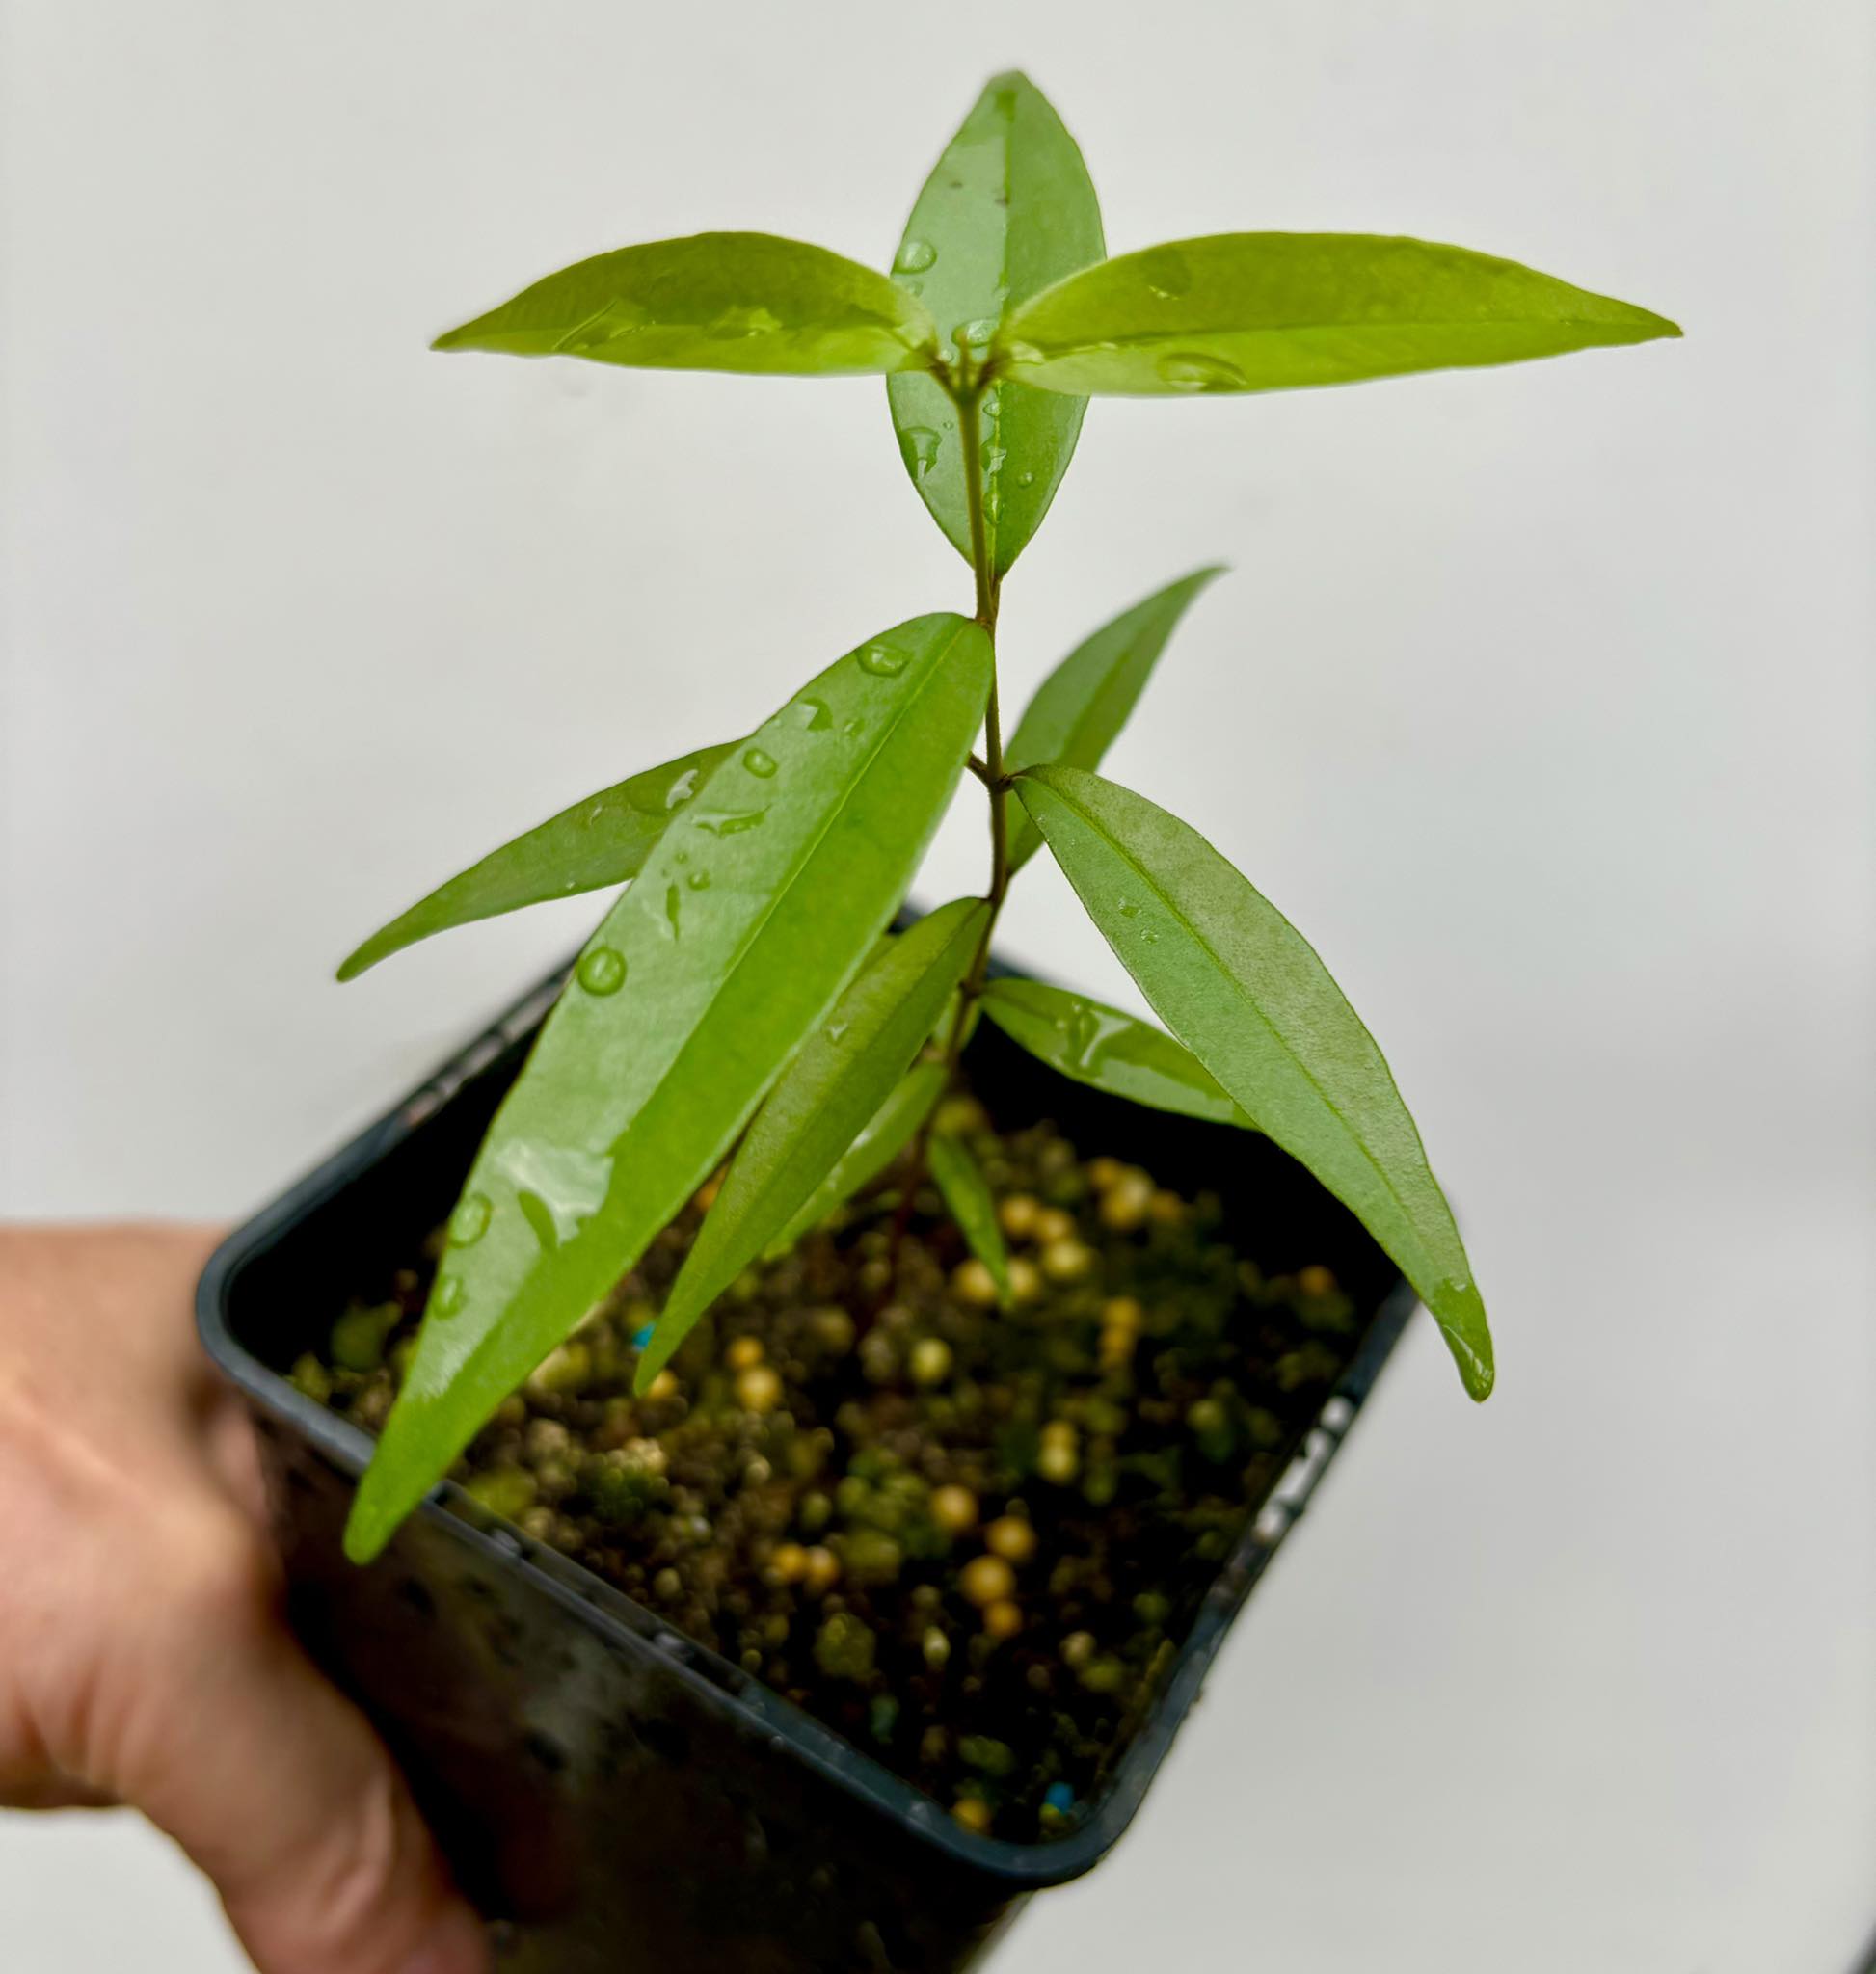 Eugenia pruniformis - Ameixa da Preta - 1 potted plant / 1 getopfte Pflanze